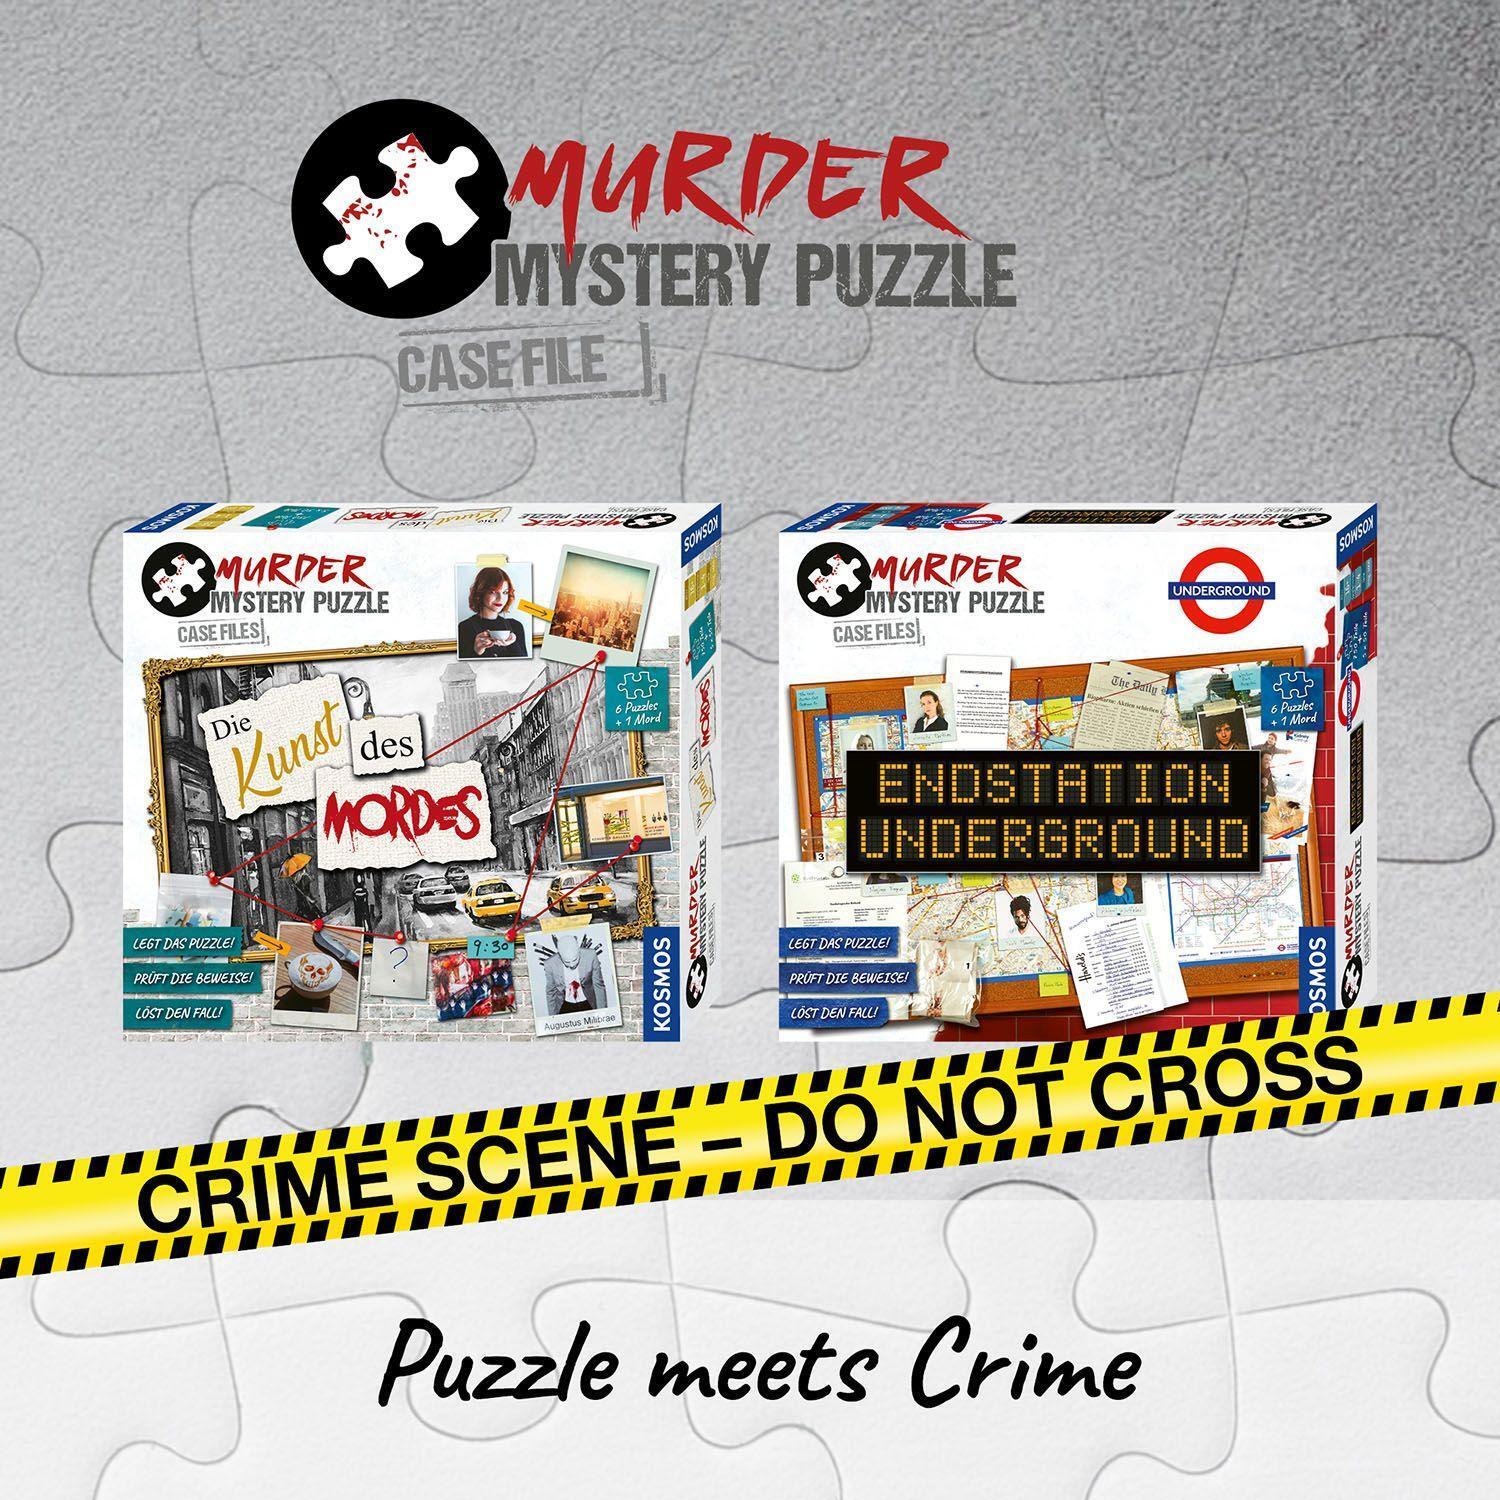 Bild: 4002051682170 | Murder Mystery Puzzle - Endstation Underground | Spiel | Deutsch